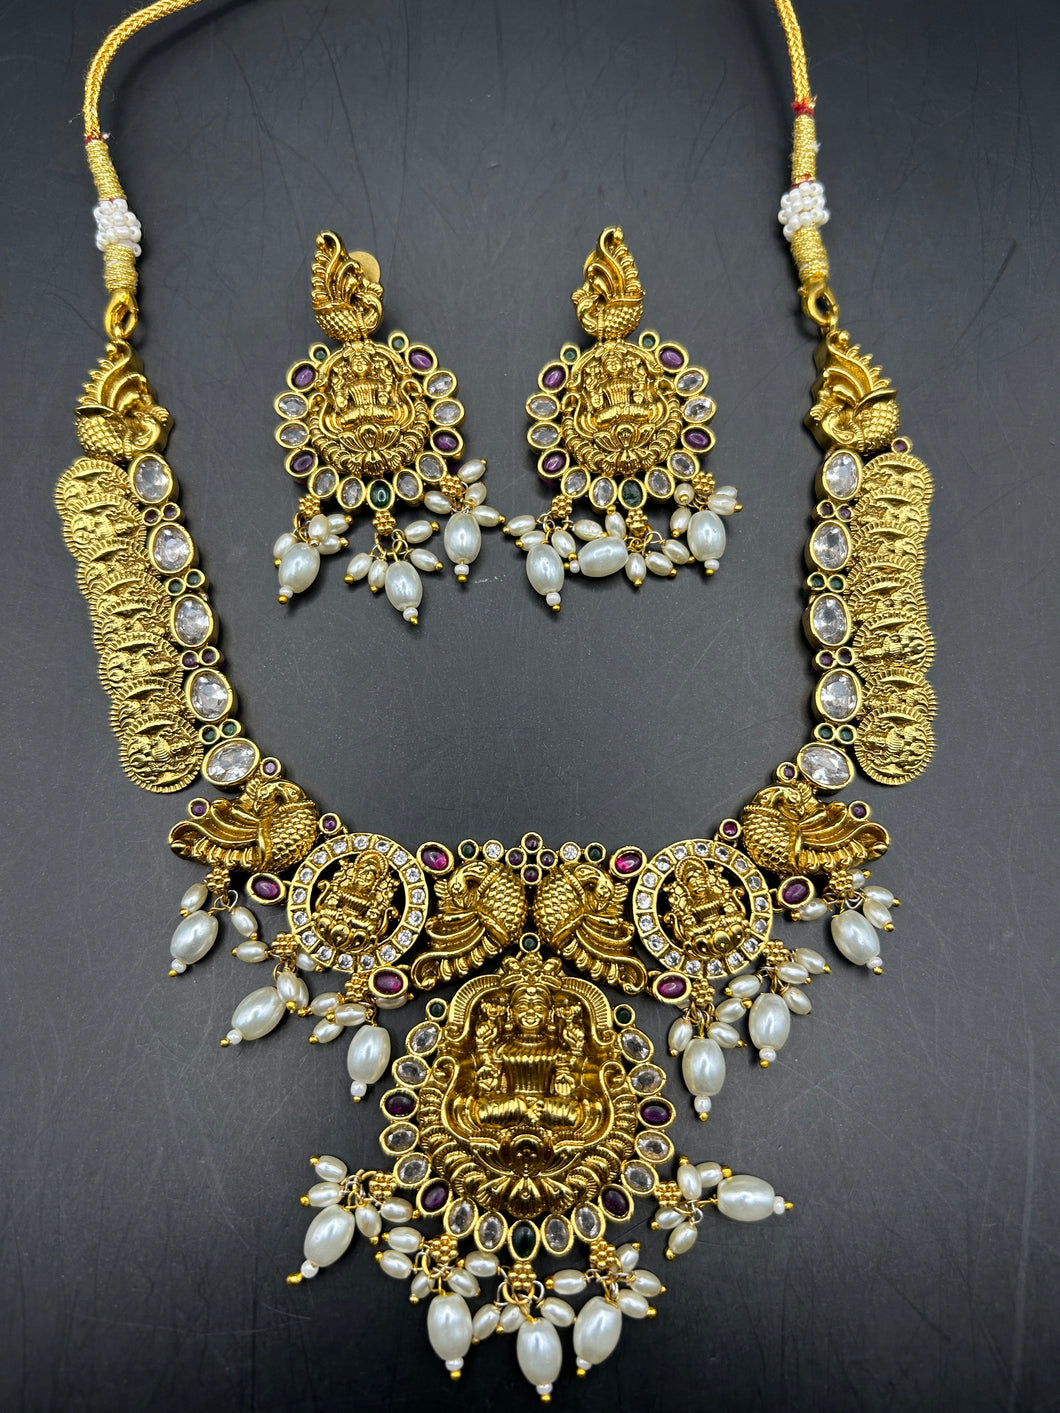 Heera necklace